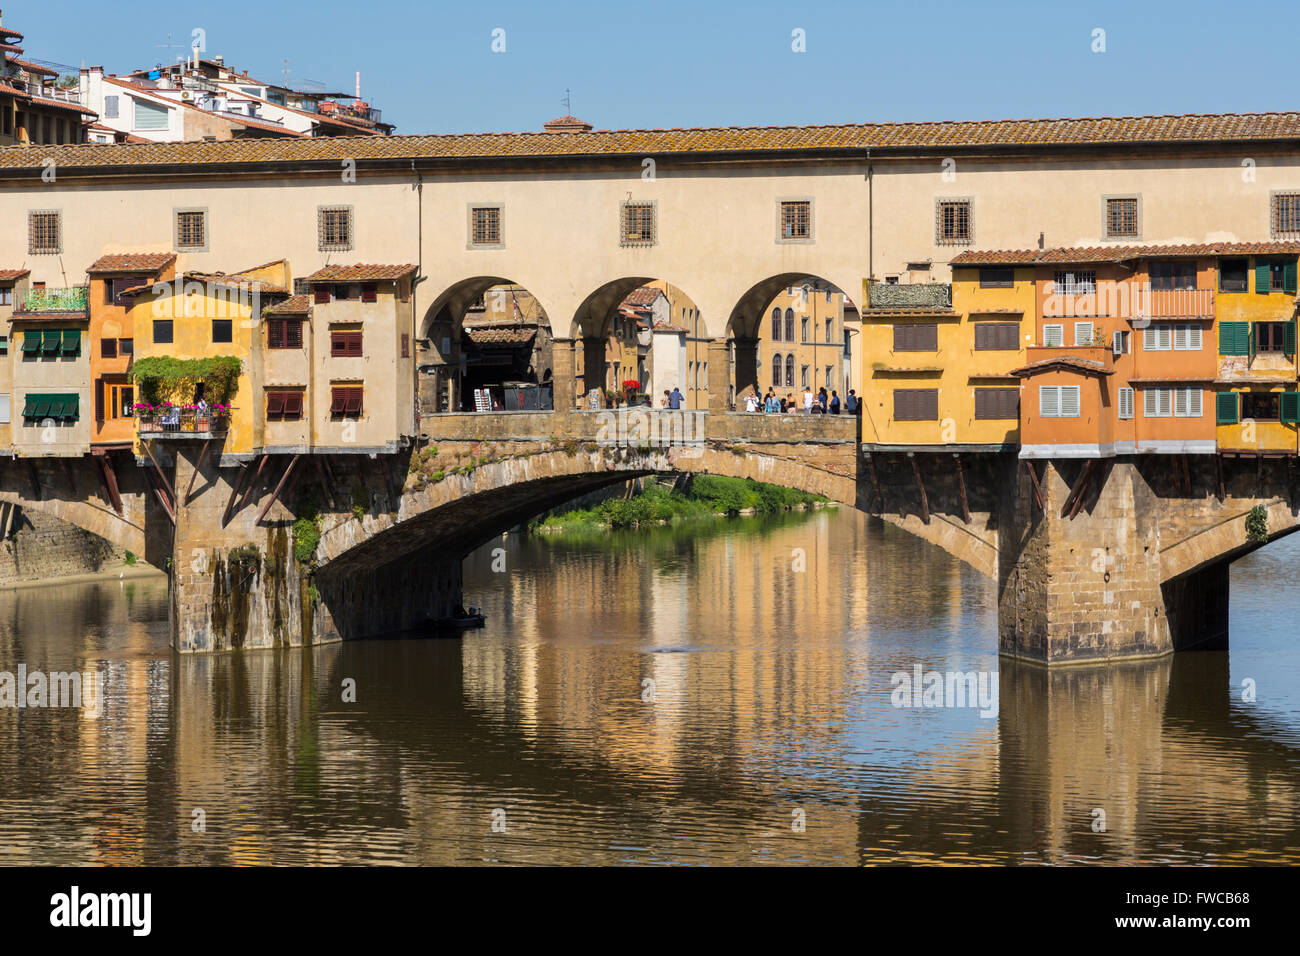 Firenze, Provincia di Firenze, Toscana, Italia. Il medievale Ponte Vecchio o Ponte Vecchio e sul fiume Arno. Foto Stock